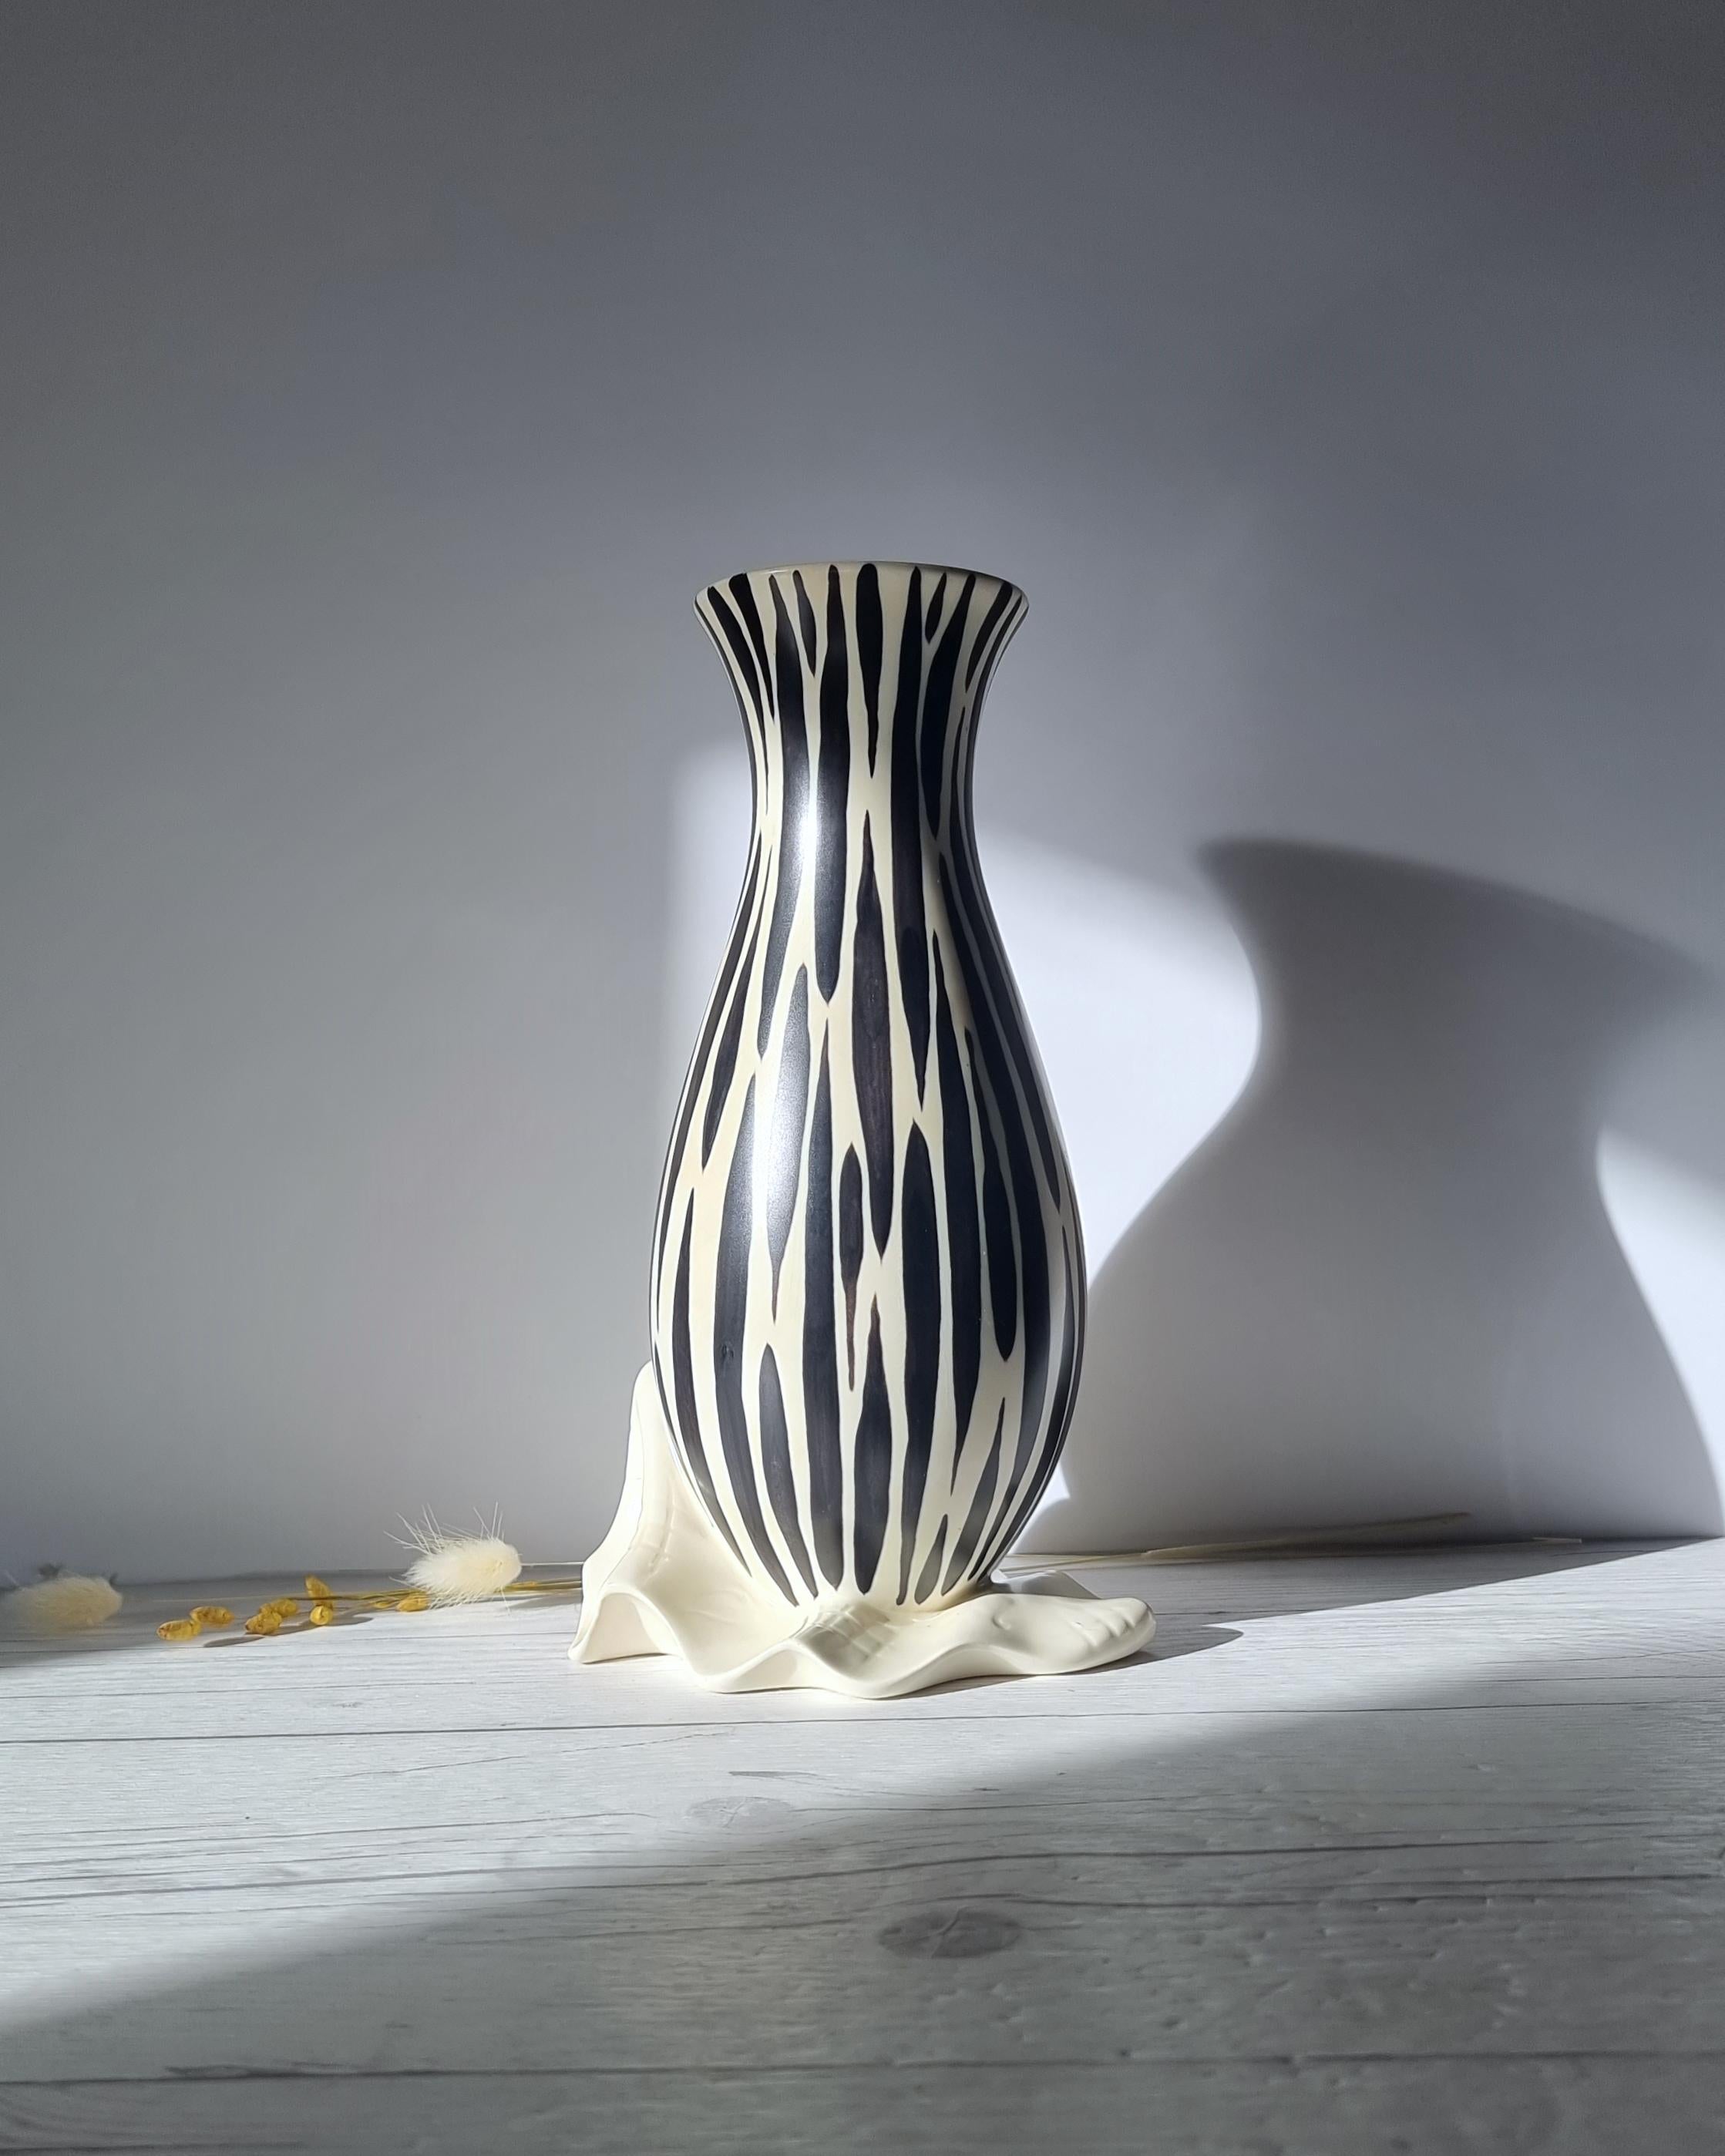 Cette œuvre vive du design moderniste du milieu du siècle est réalisée par Albert Hallam pour British Pottery Beswick, un nom solidement établi dans le design de la céramique britannique. La forme stylisée et élégante de la bouteille, posée sur le